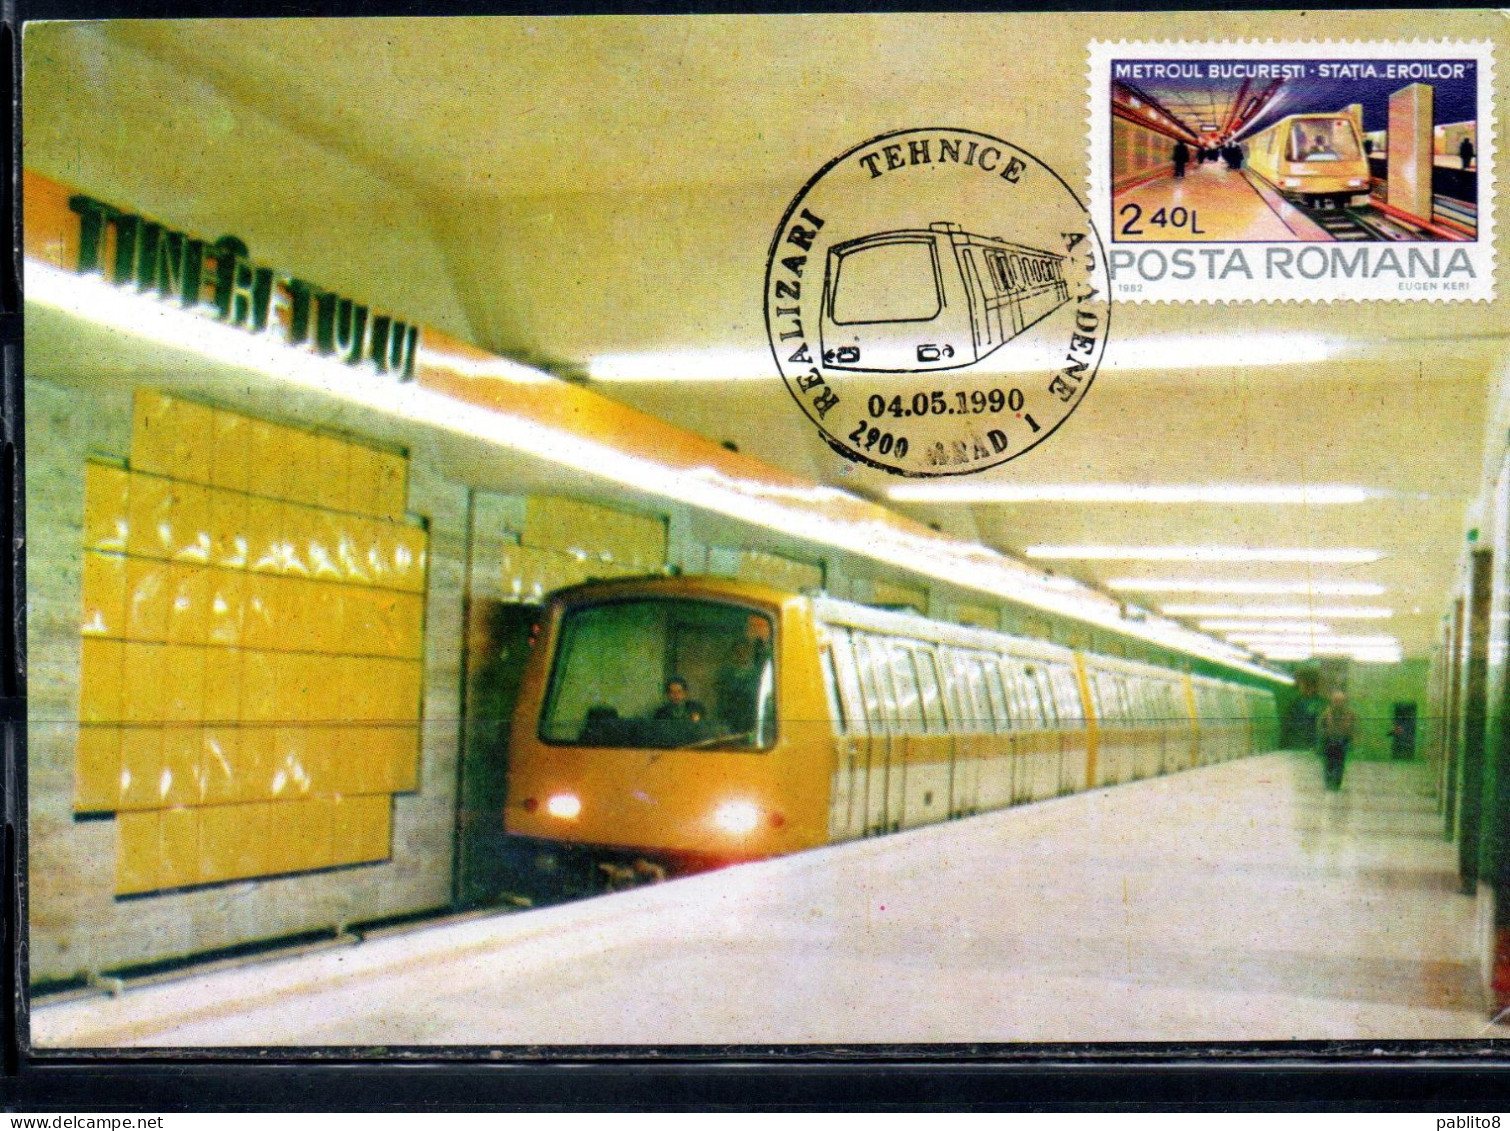 ROMANIA 1982 SUBWAY METROUL BUCARESTI METROPOLITANA 2.40L MAXI MAXIMUM CARD - Maximumkarten (MC)